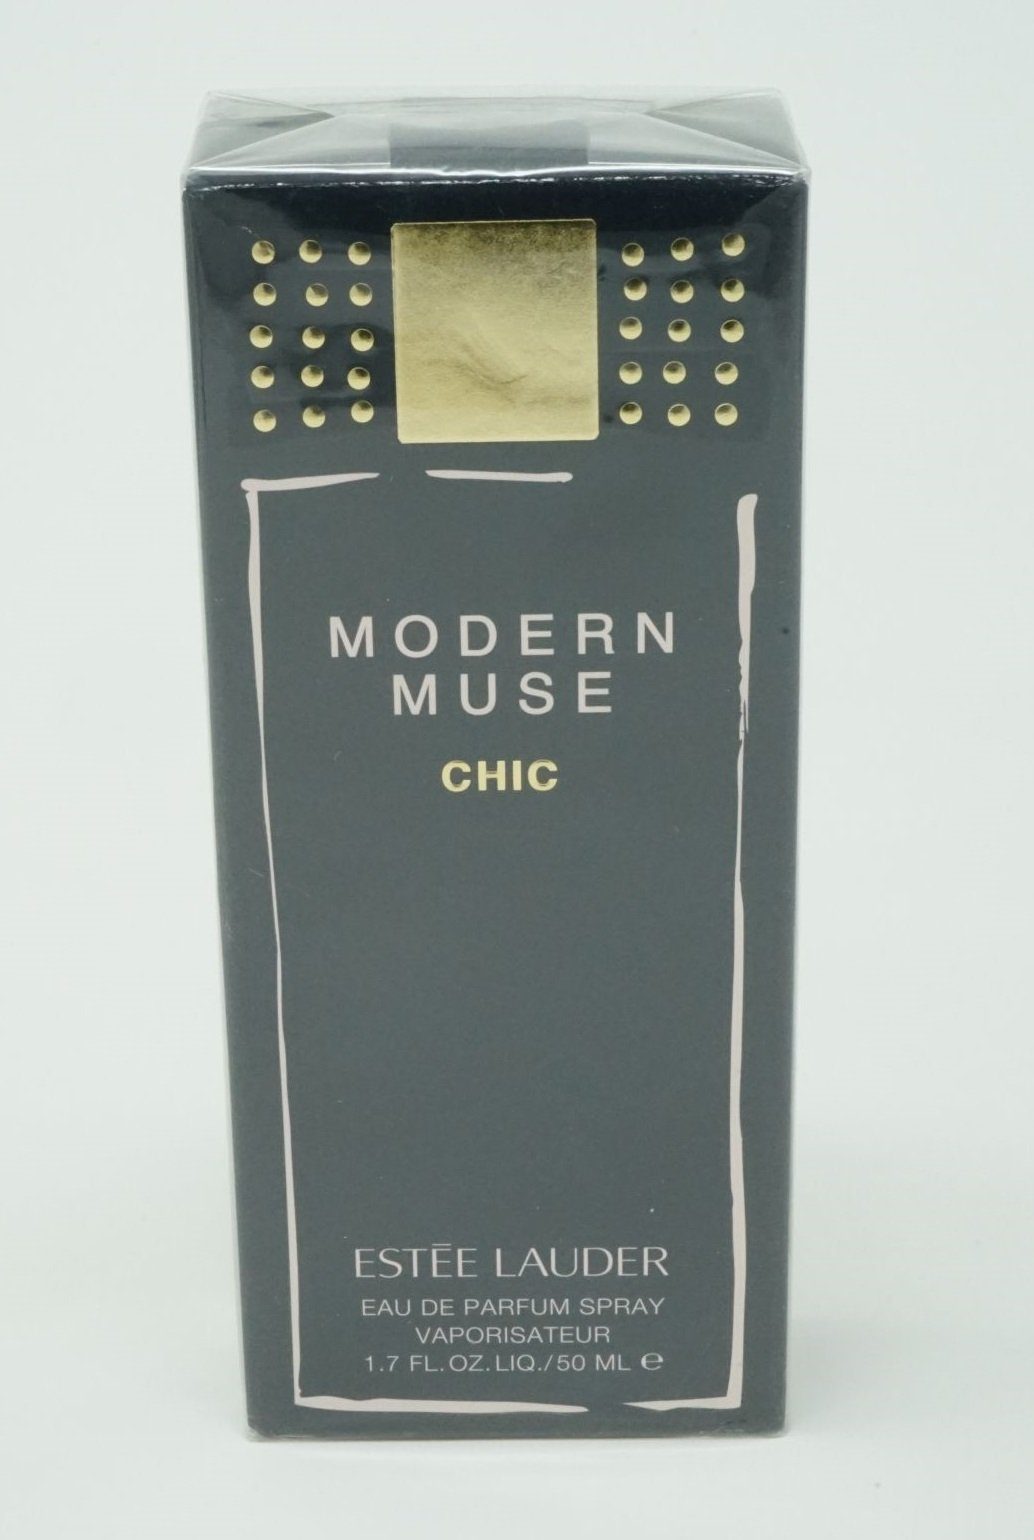 Chic Muse Parfum Lauder de de Eau 50 Eau Spray ESTÉE Parfum Estee Modern LAUDER ml